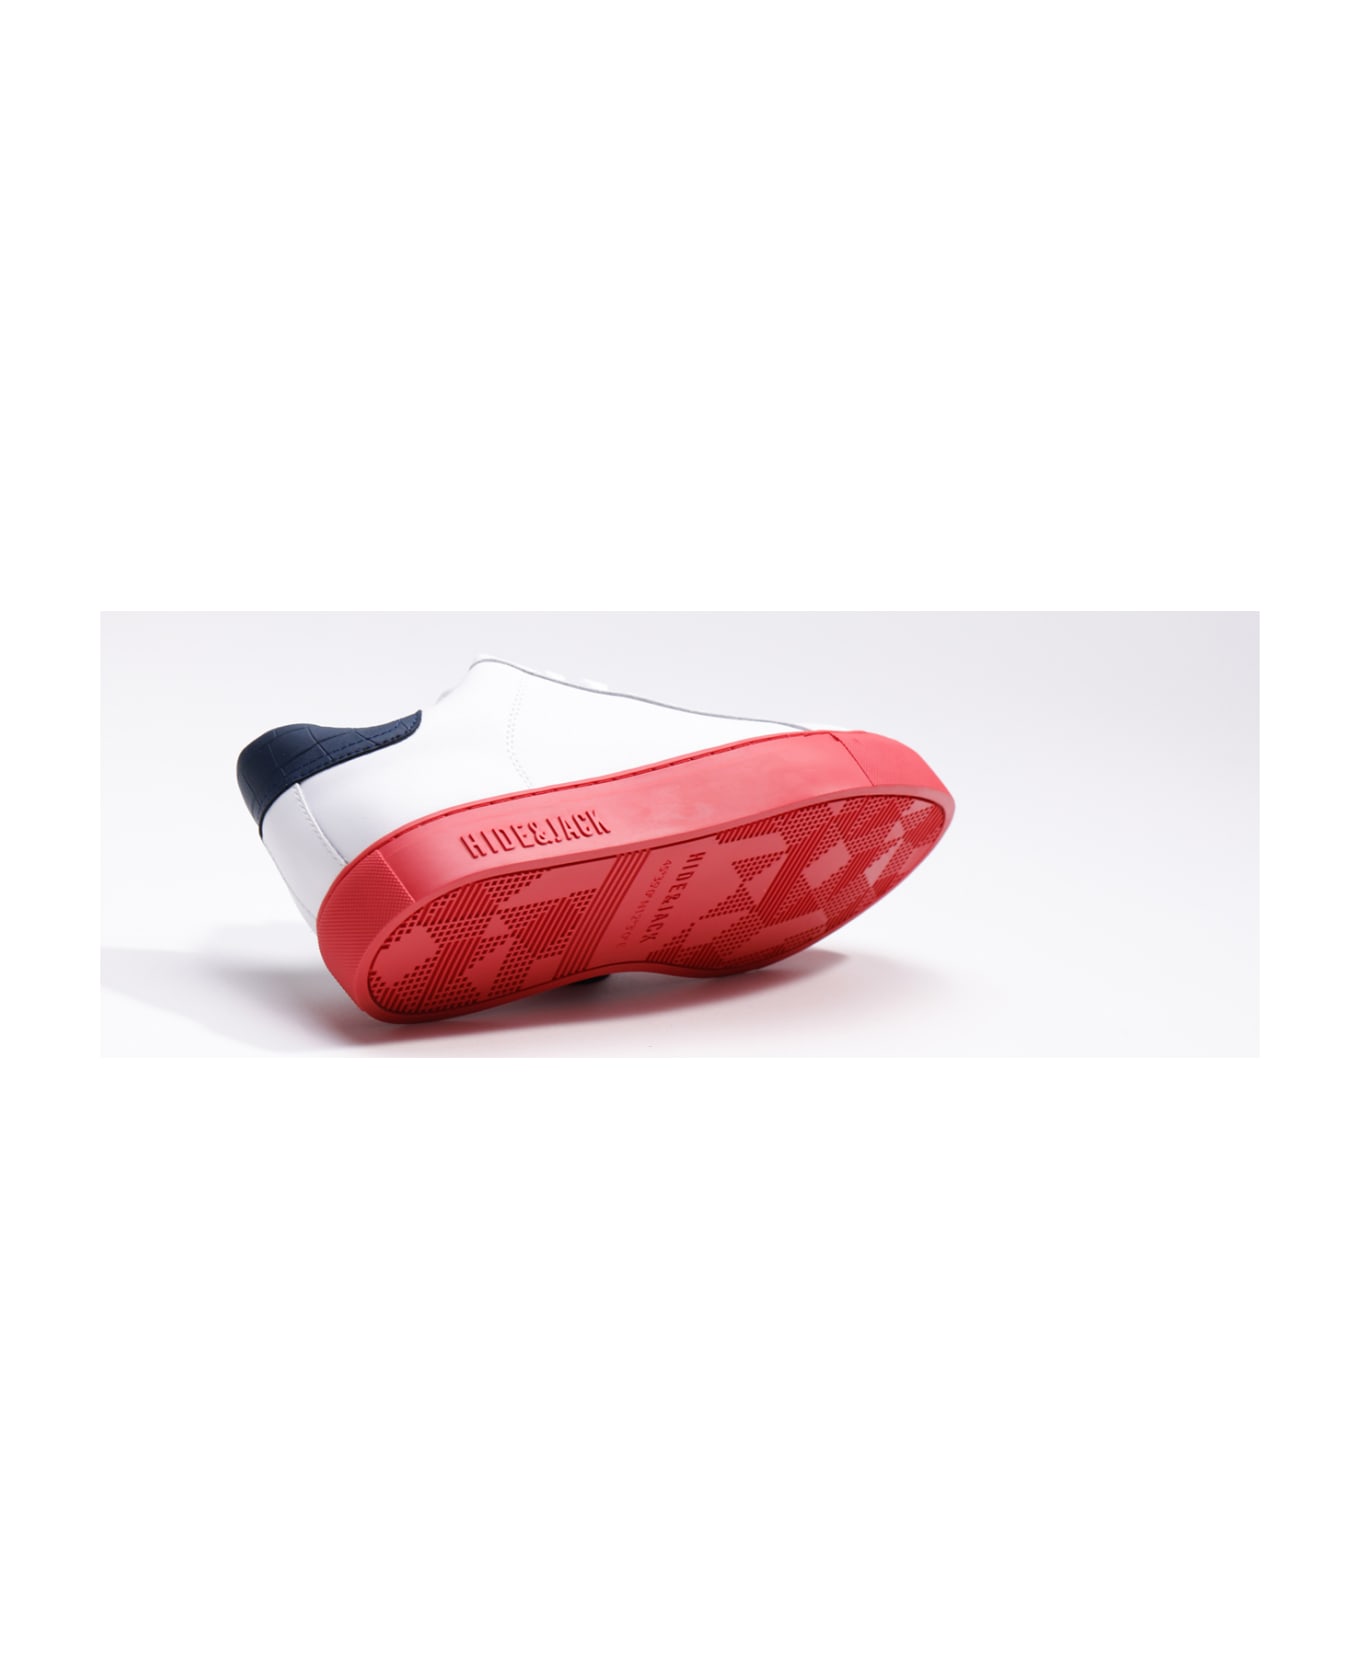 Hide&Jack Low Top Sneaker - Essence Sky Blue Red スニーカー